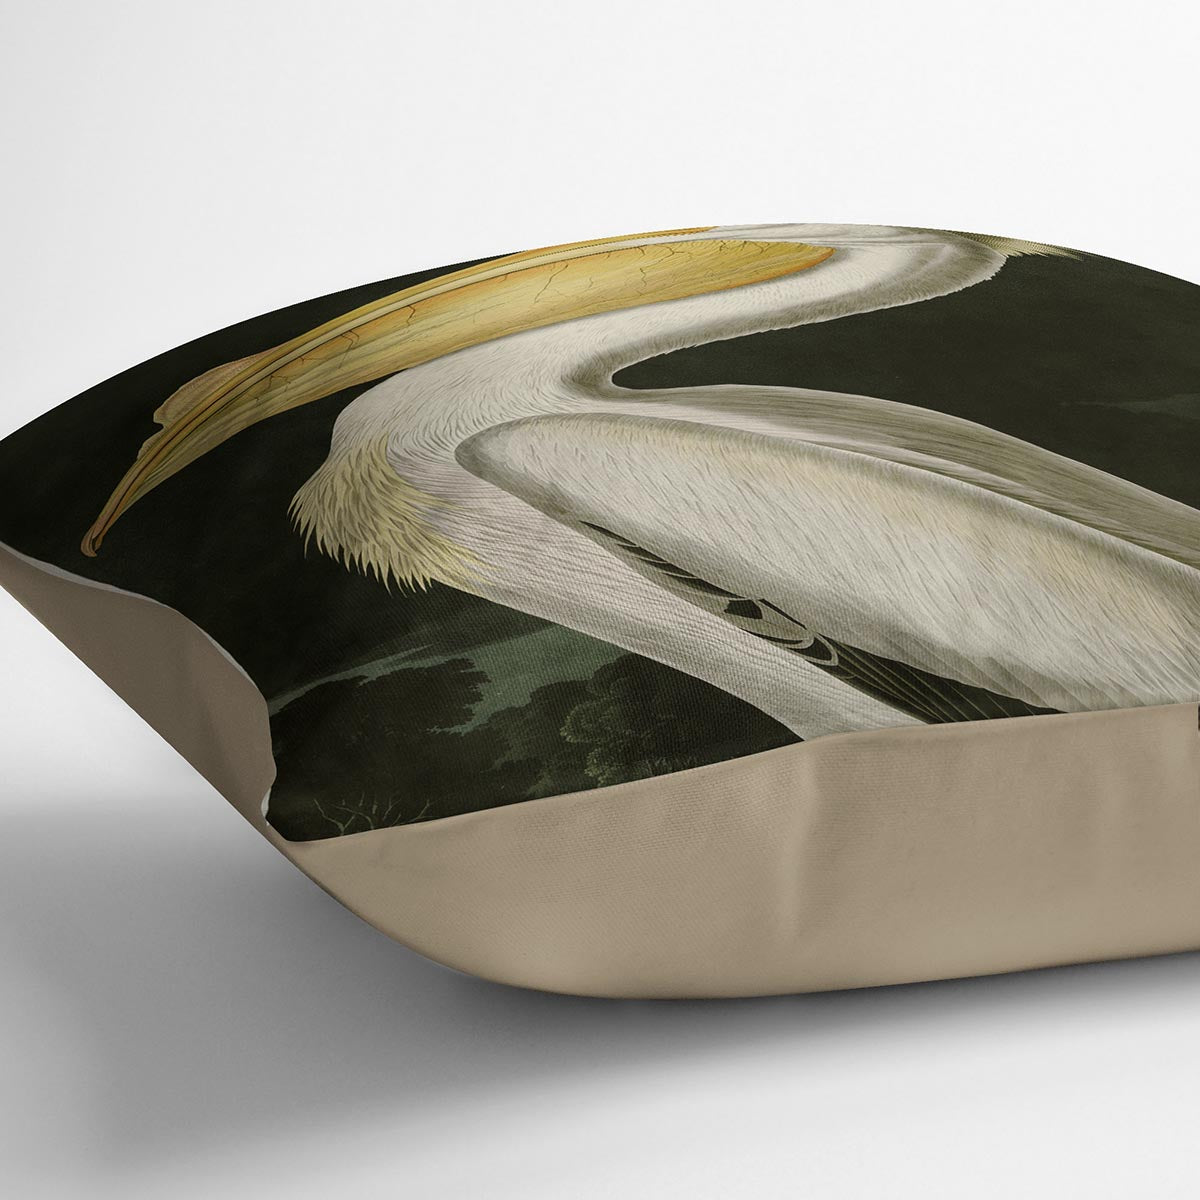 American White Pelican by Audubon Cushion